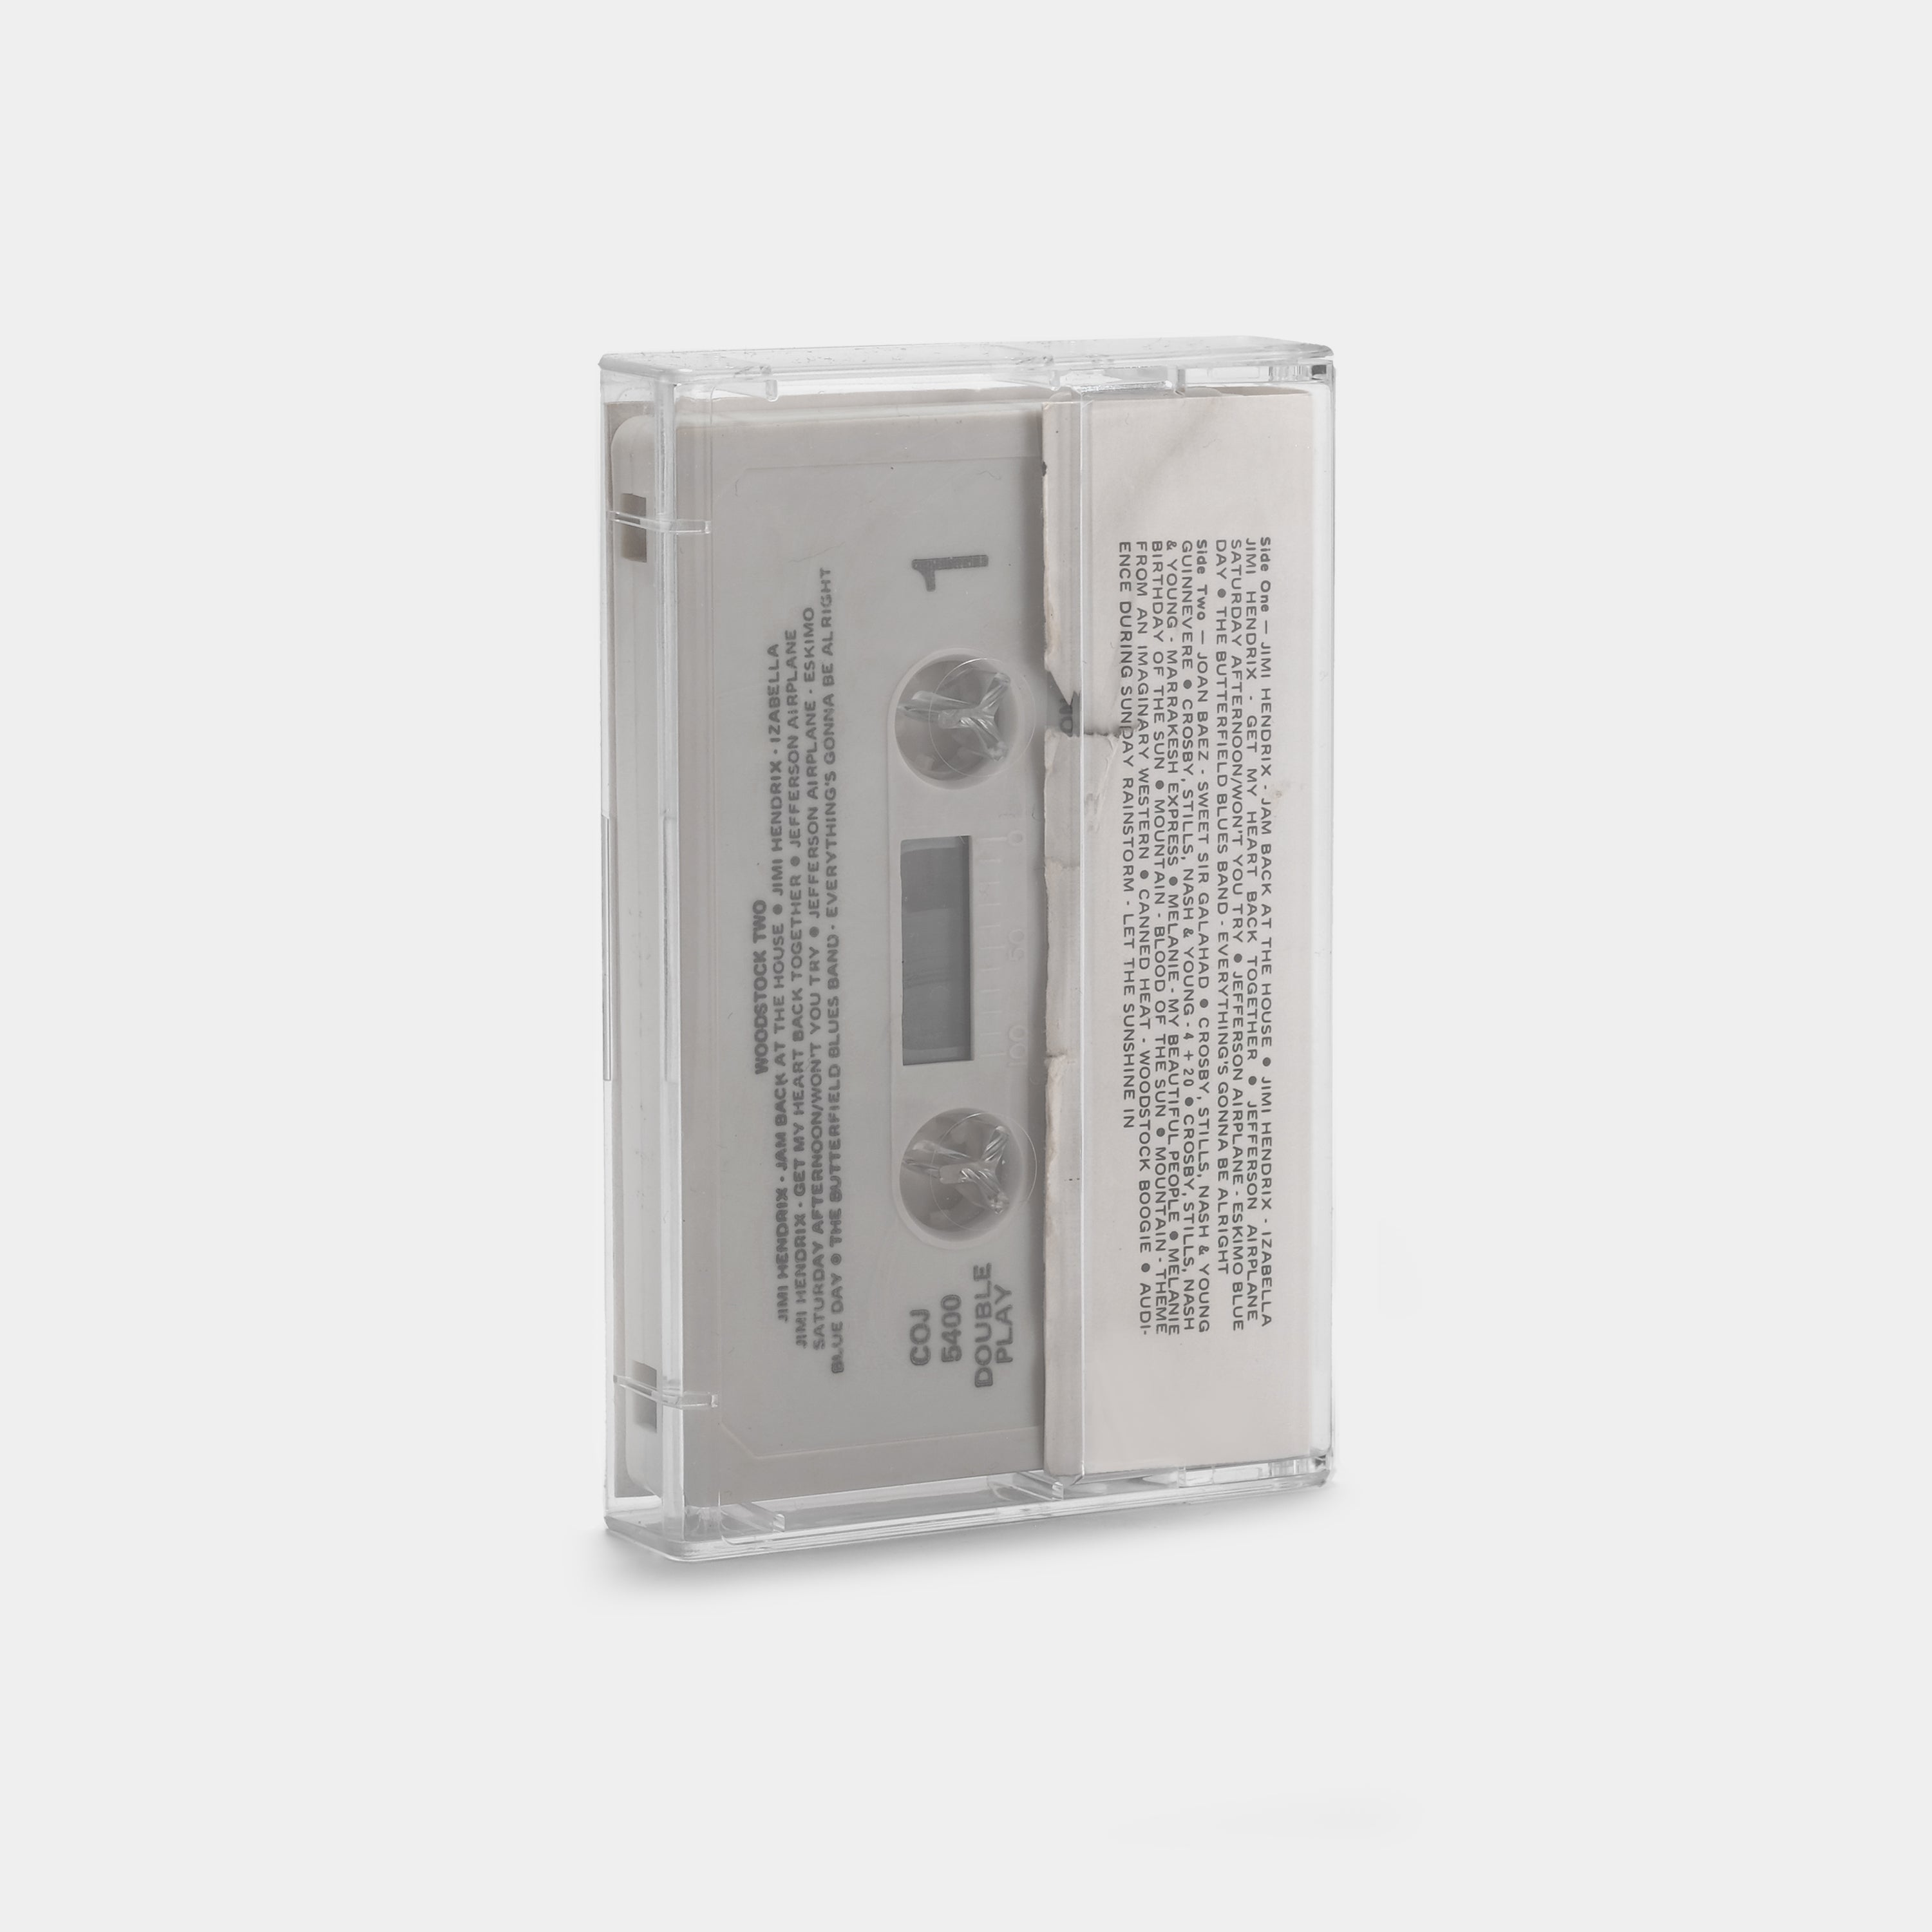 Woodstock 2 Cassette Tape